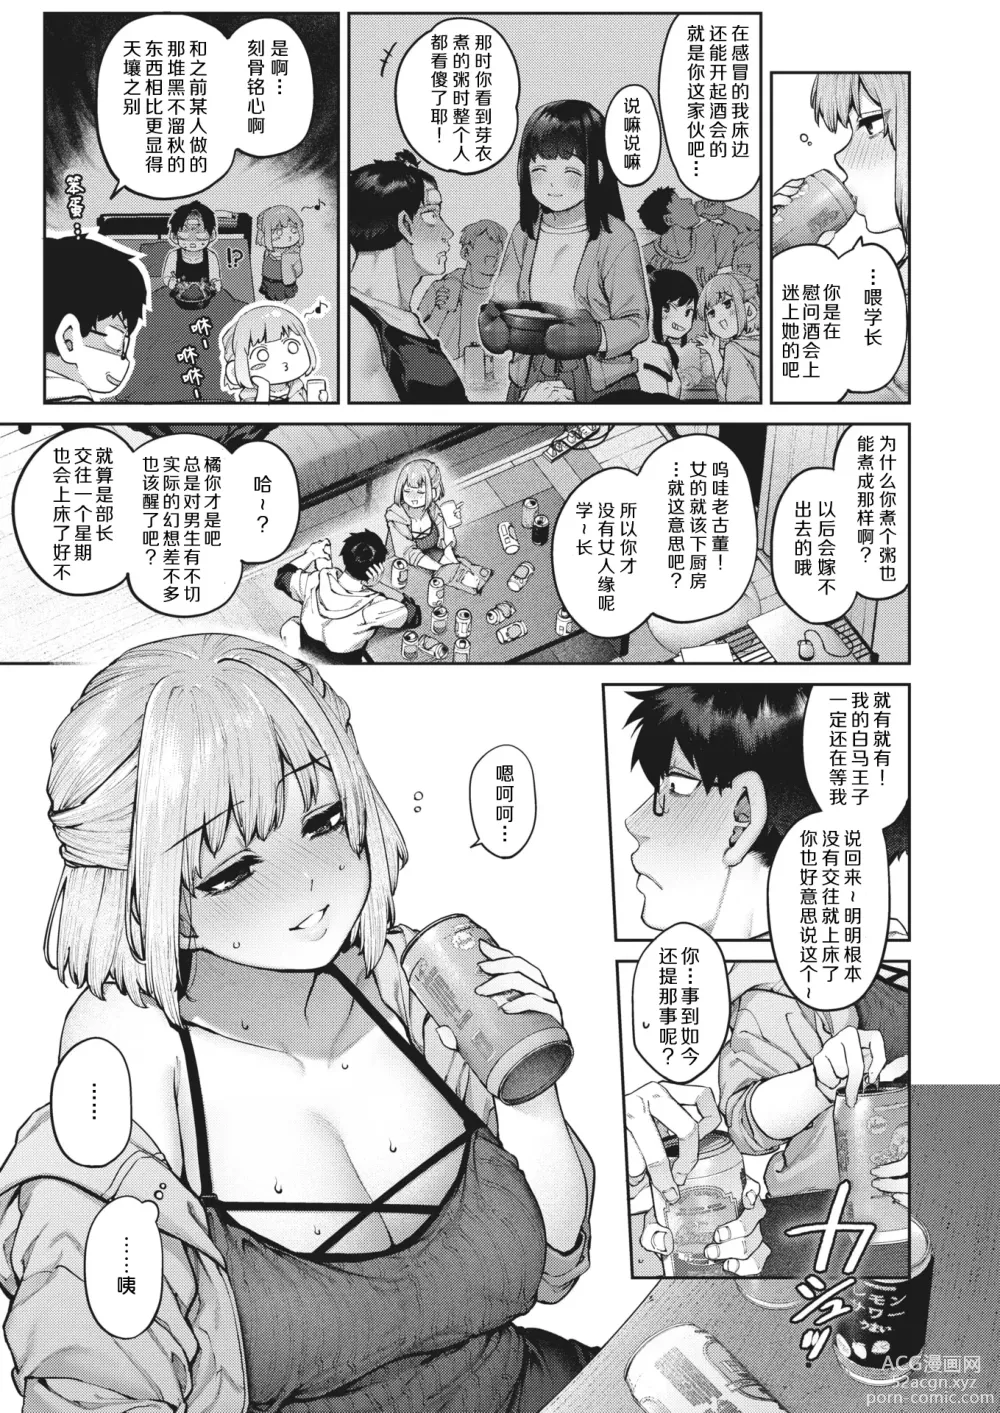 Page 8 of manga 垫脚石之恋